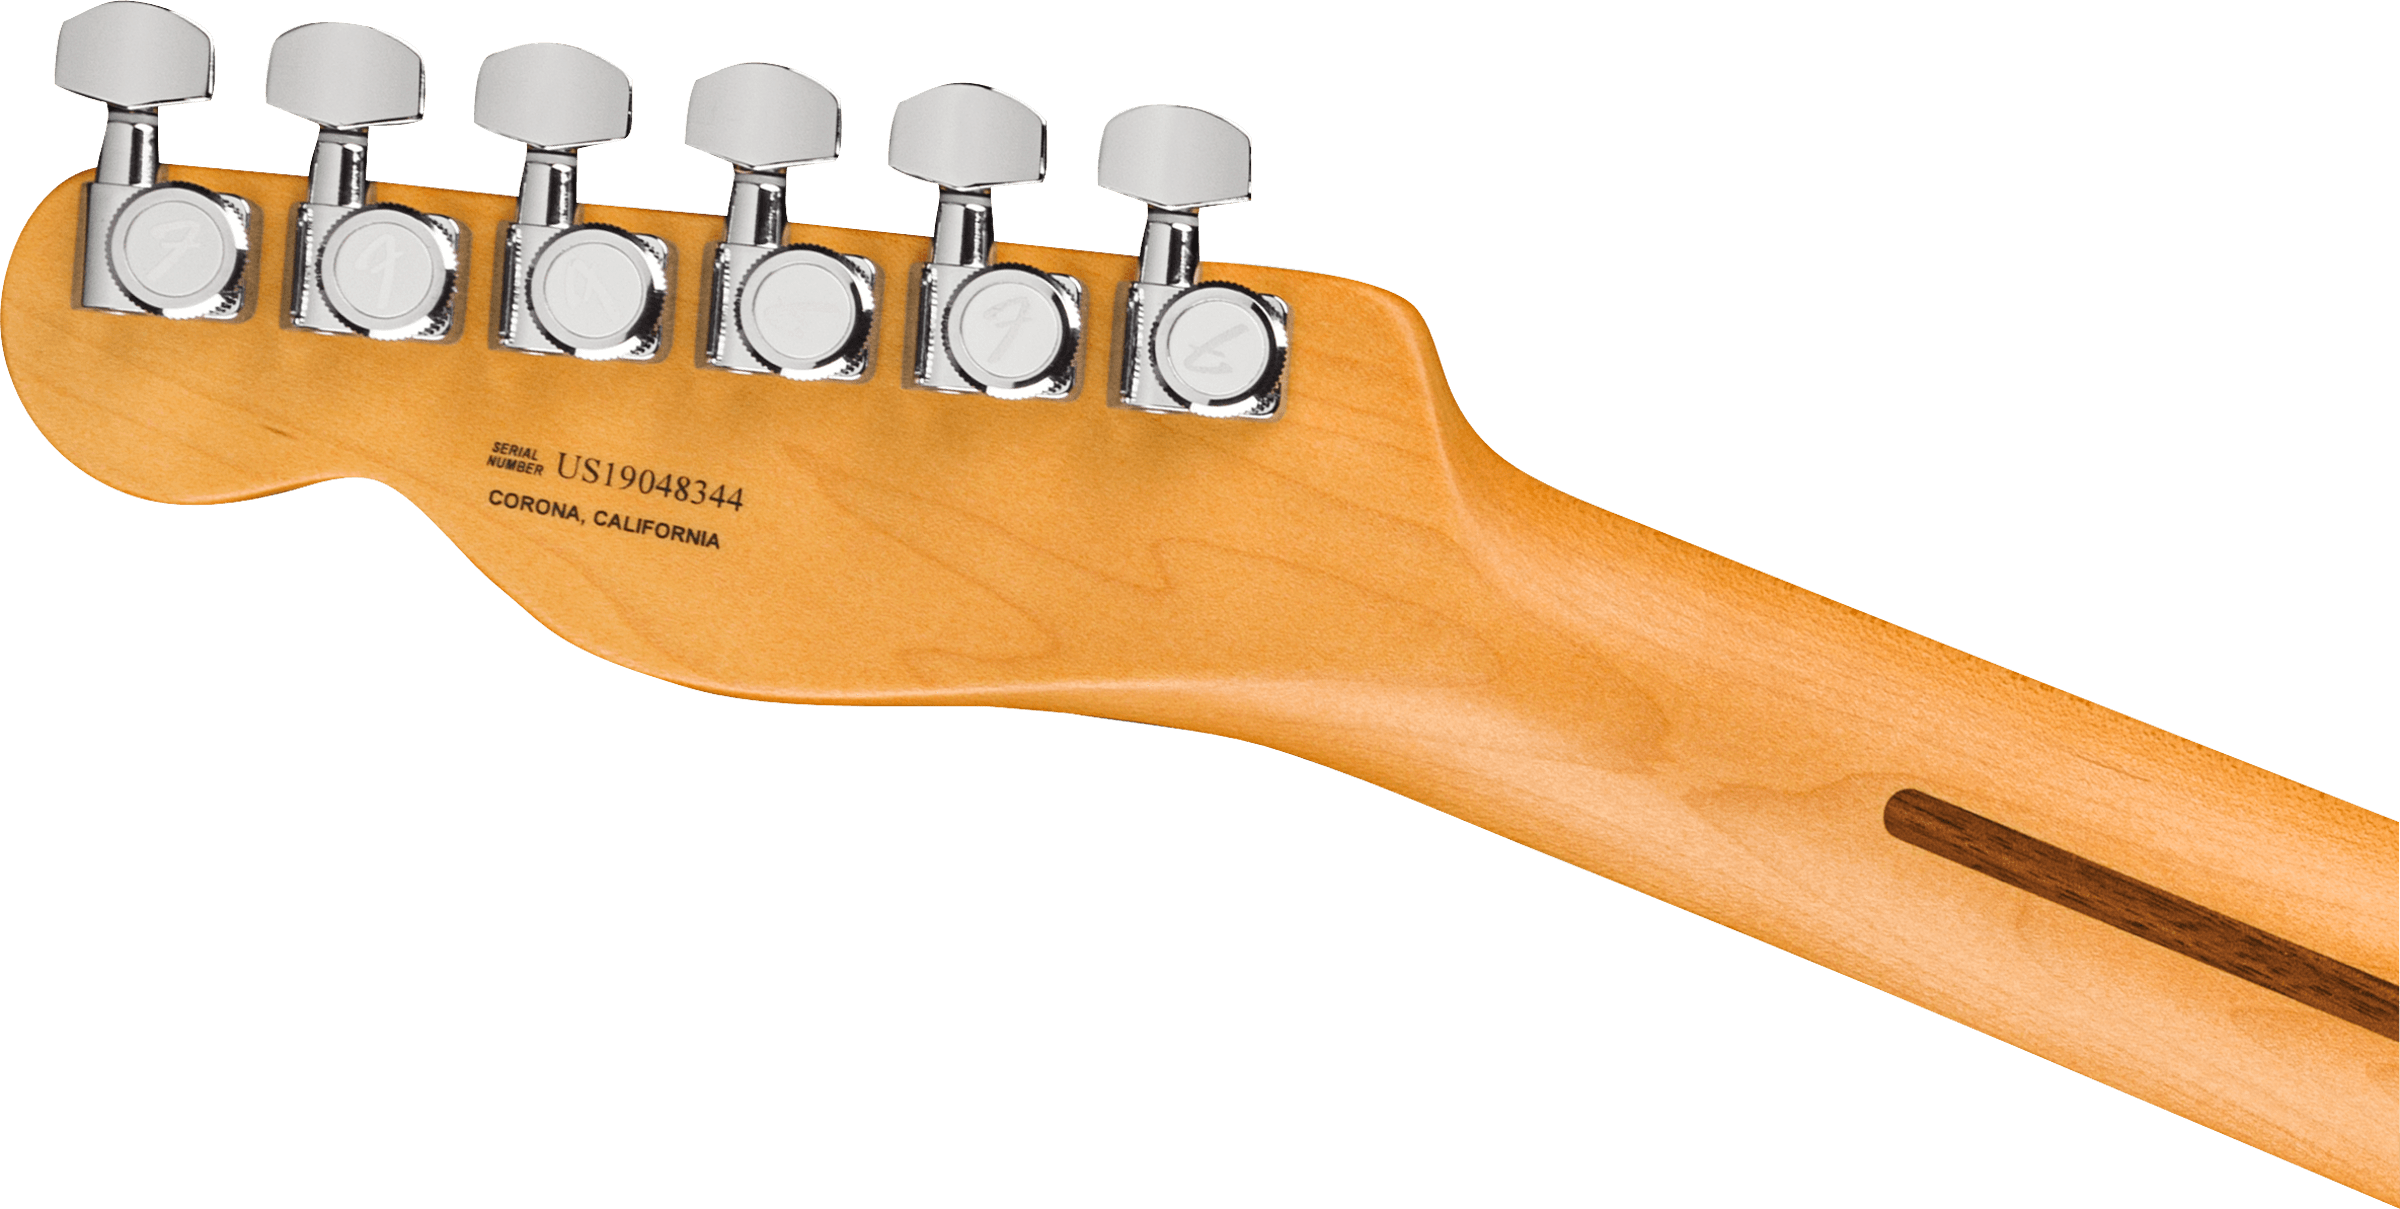 Fender American Ultra Telecaster Maple Fingerboard Ultraburst 0118032712